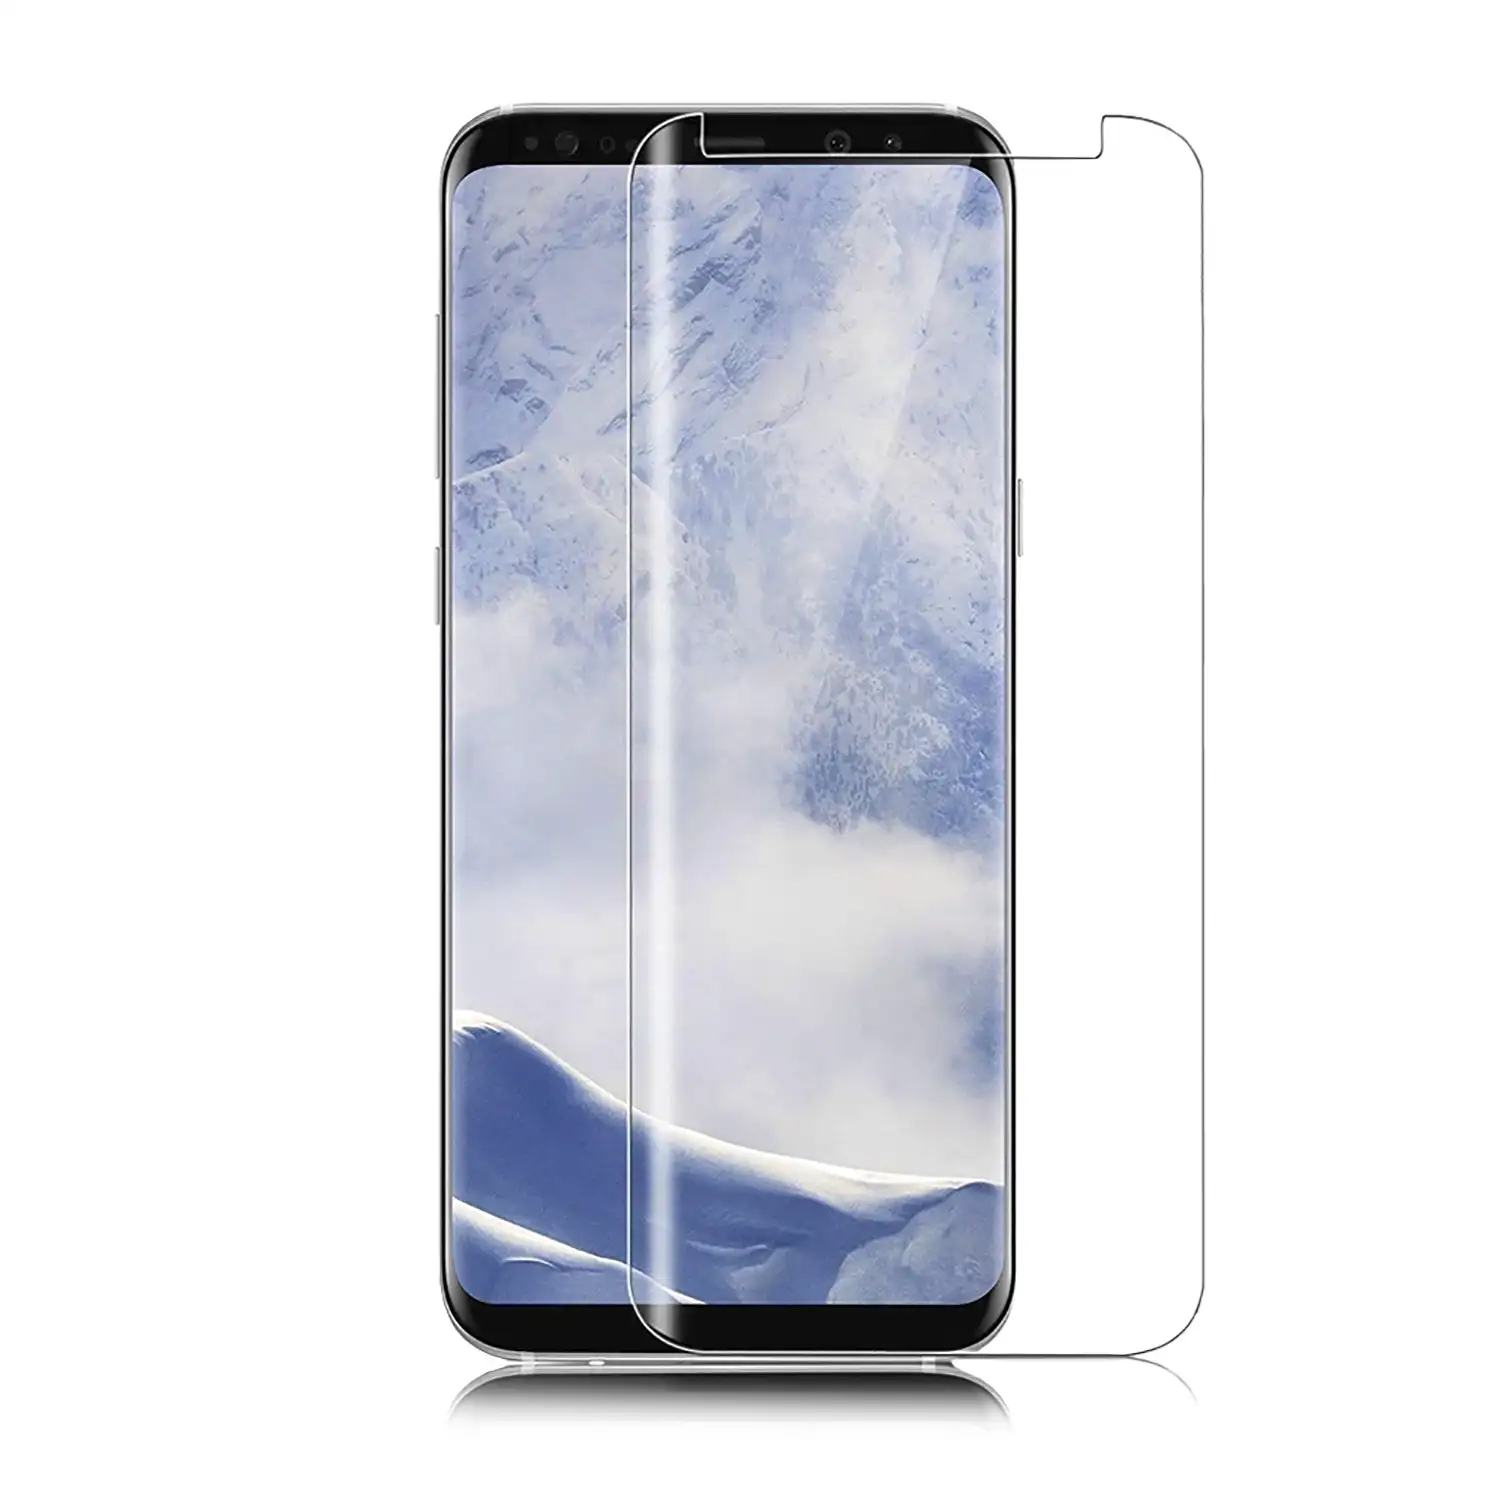 Protector de cristal templado Premium de pantalla completa curva 4D con accesoriOS de instalación para Samsung S9